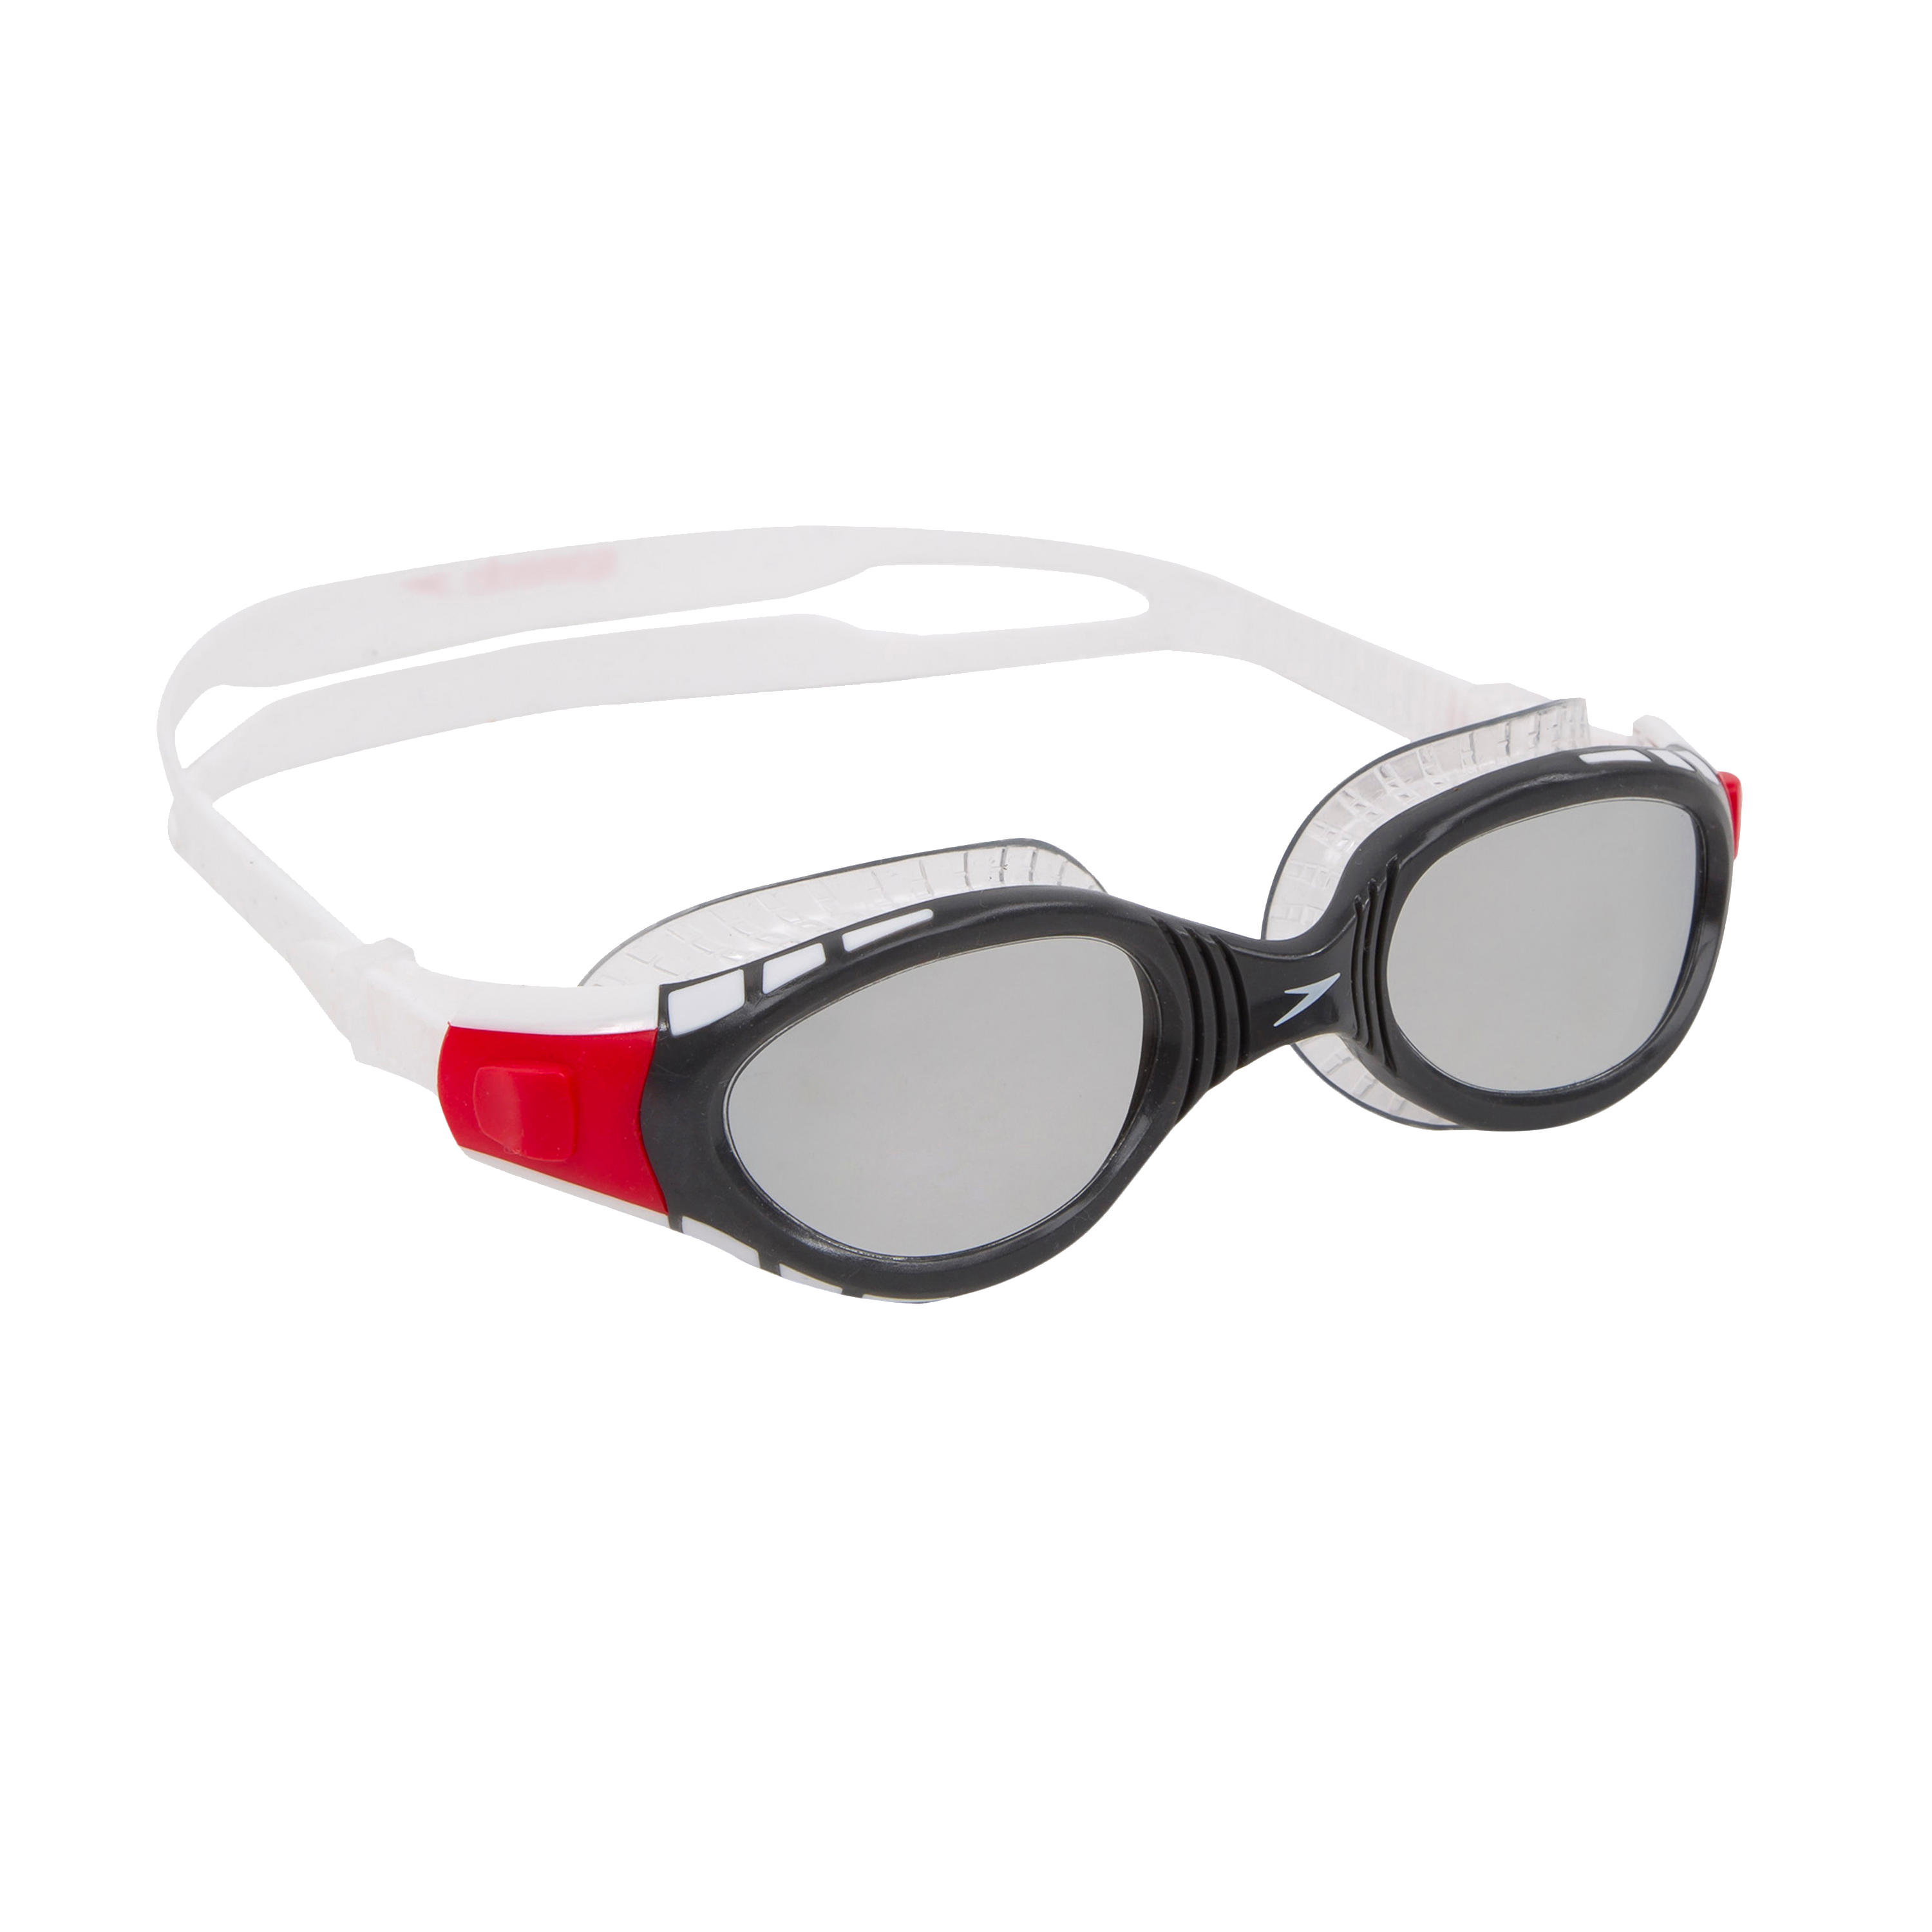 speedo biofuse goggles